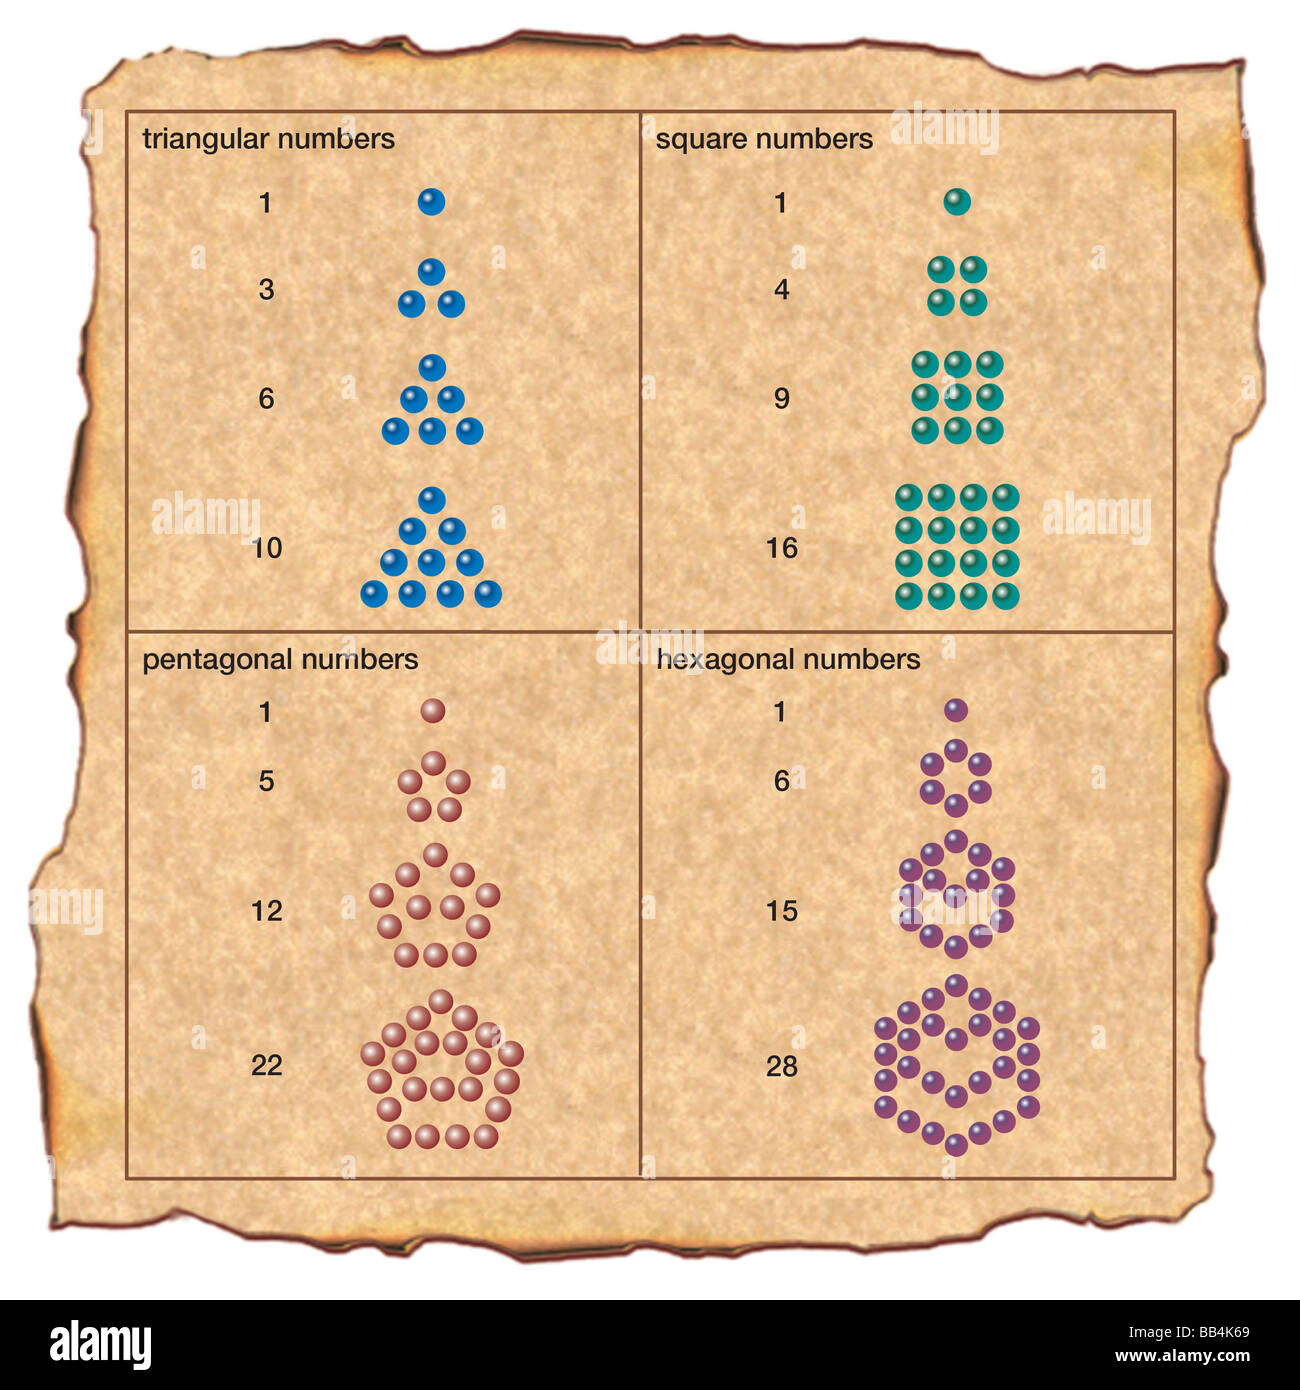 Die alten Griechen angeordnet Kieselsteine in Mustern, arithmetische sowie mystische, Beziehungen zwischen Zahlen zu erkennen. Stockfoto